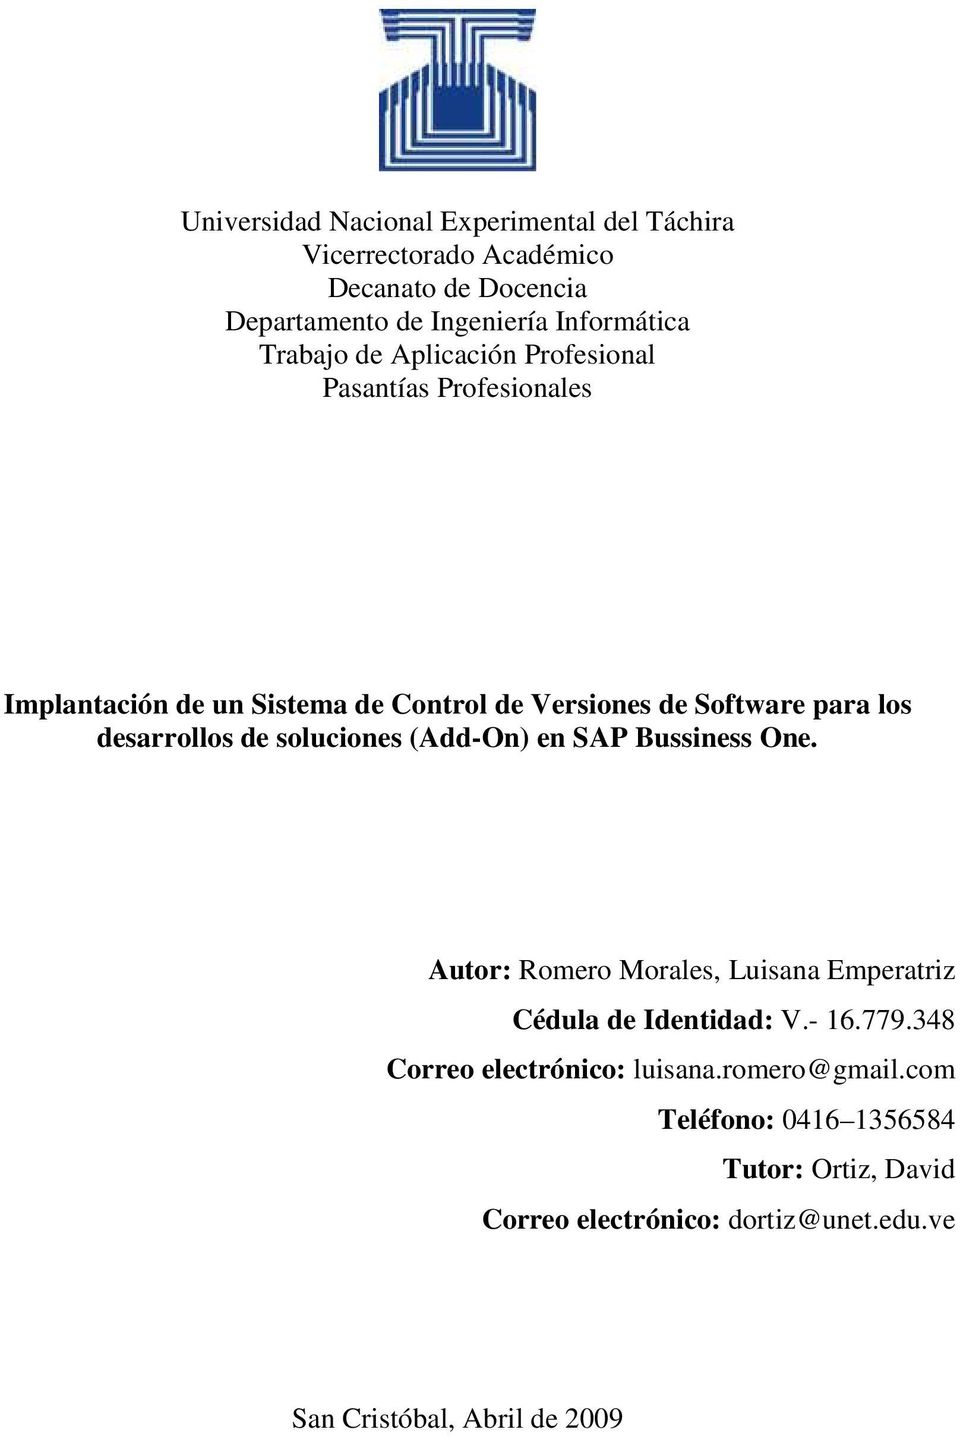 desarrollos de soluciones (Add-On) en SAP Bussiness One. Autor: Romero Morales, Luisana Emperatriz Cédula de Identidad: V.- 16.779.